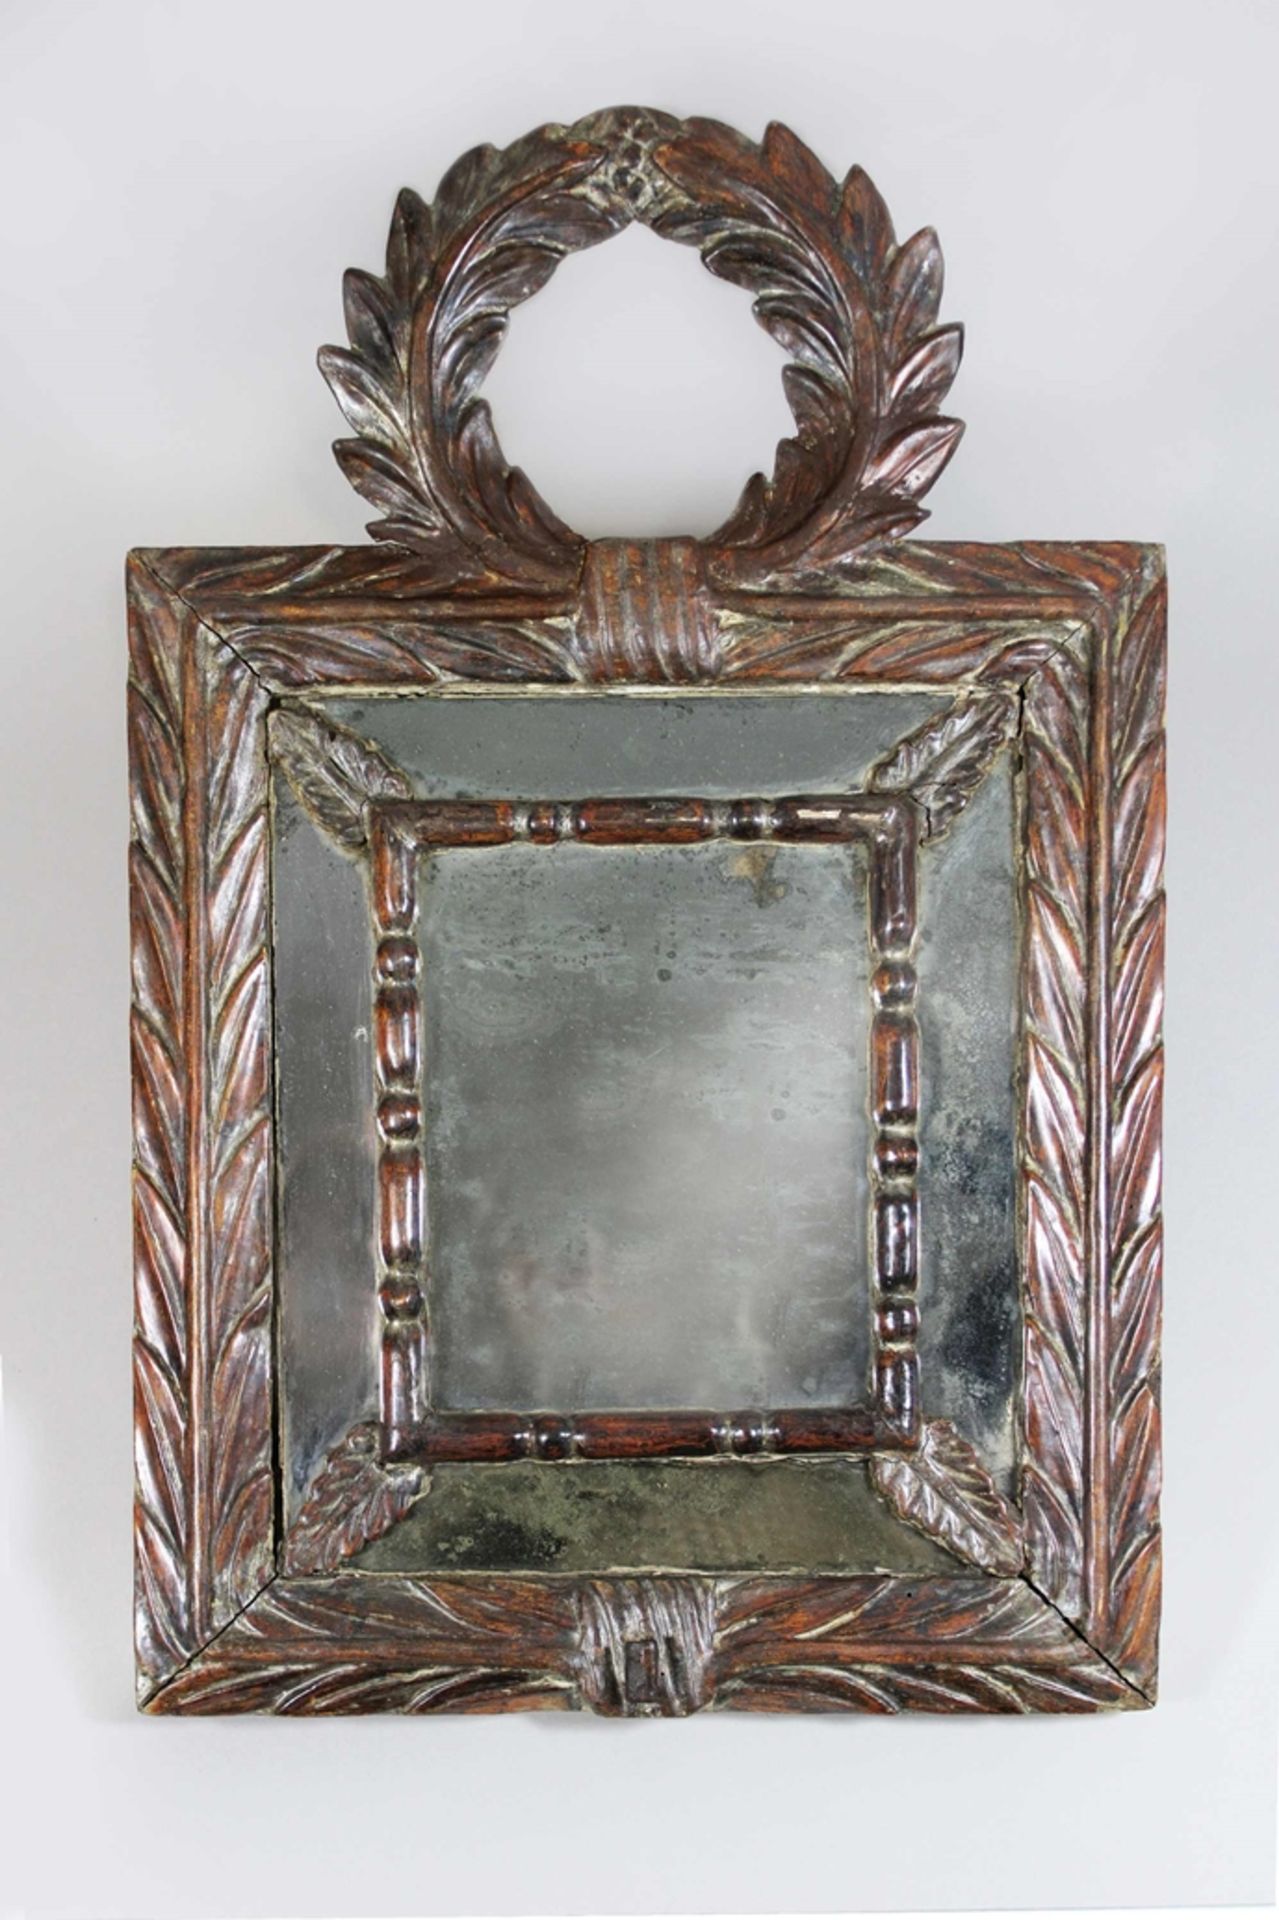 Spiegel mit Wandleuchten, Louis XIV, Frühe 18. Jh., Frankreich, originale Fassung wie original - Bild 2 aus 3